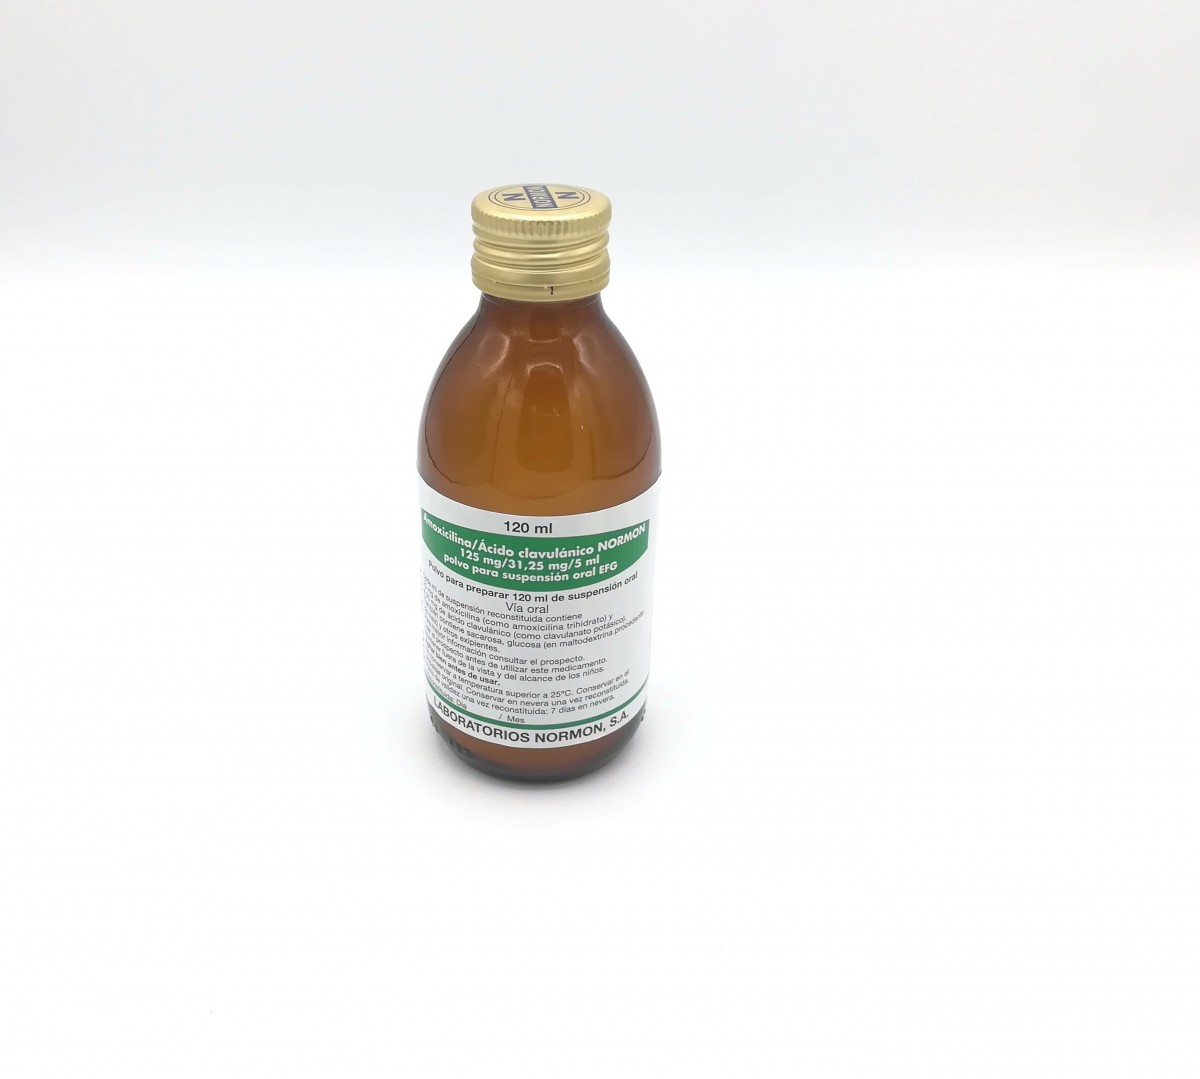 AMOXICILINA/ACIDO CLAVULANICO NORMON 125 mg/31,25 mg/5 ml POLVO PARA SUSPENSION ORAL EFG, 1 frasco de 120 ml fotografía de la forma farmacéutica.